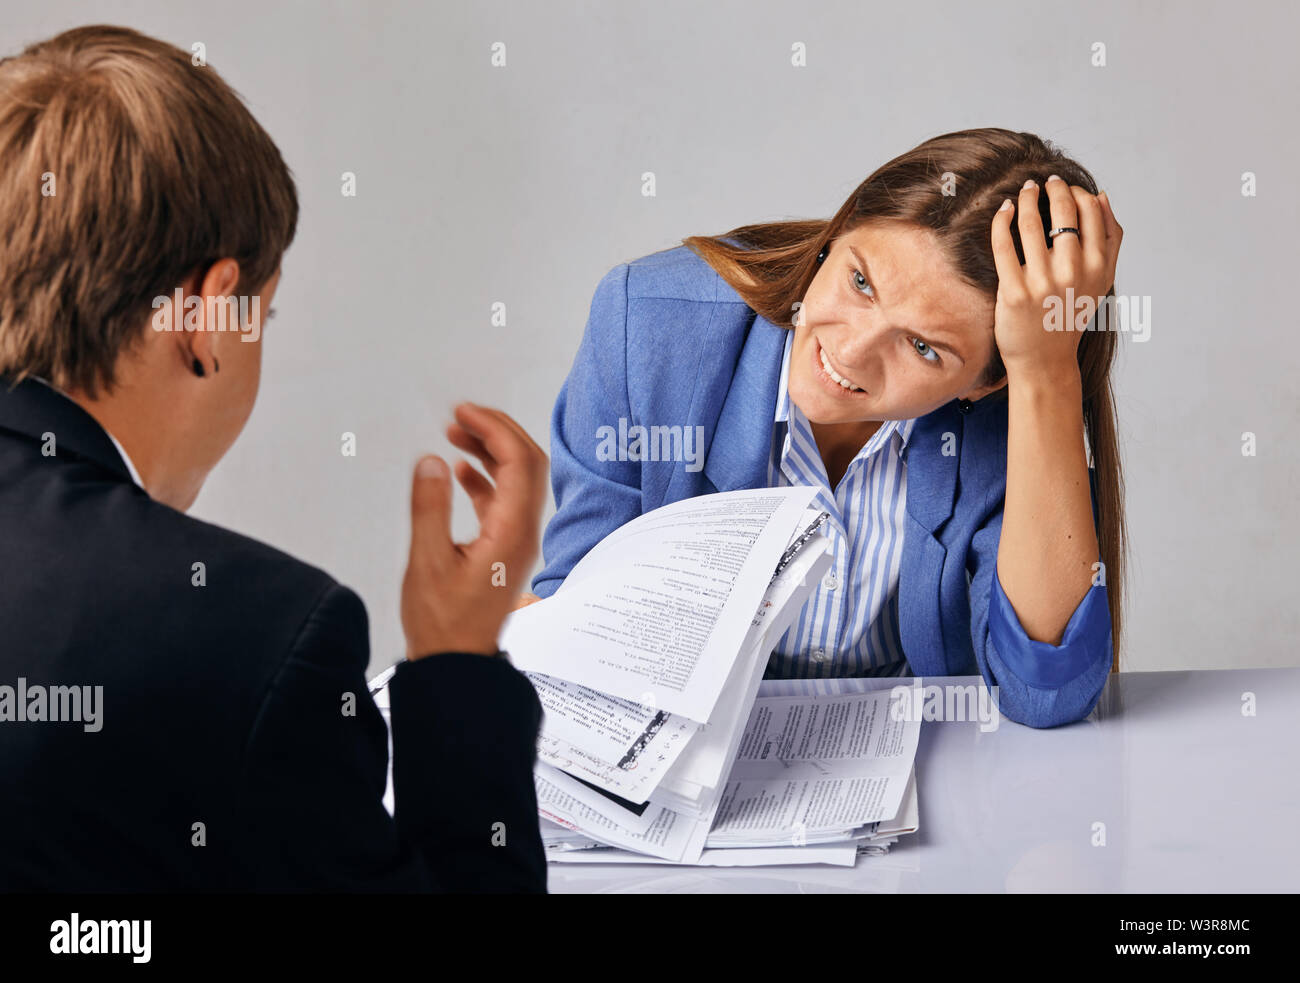 Porträt von zwei Personen. Probleme in ihren Geschäftsbeziehungen. Stockfoto